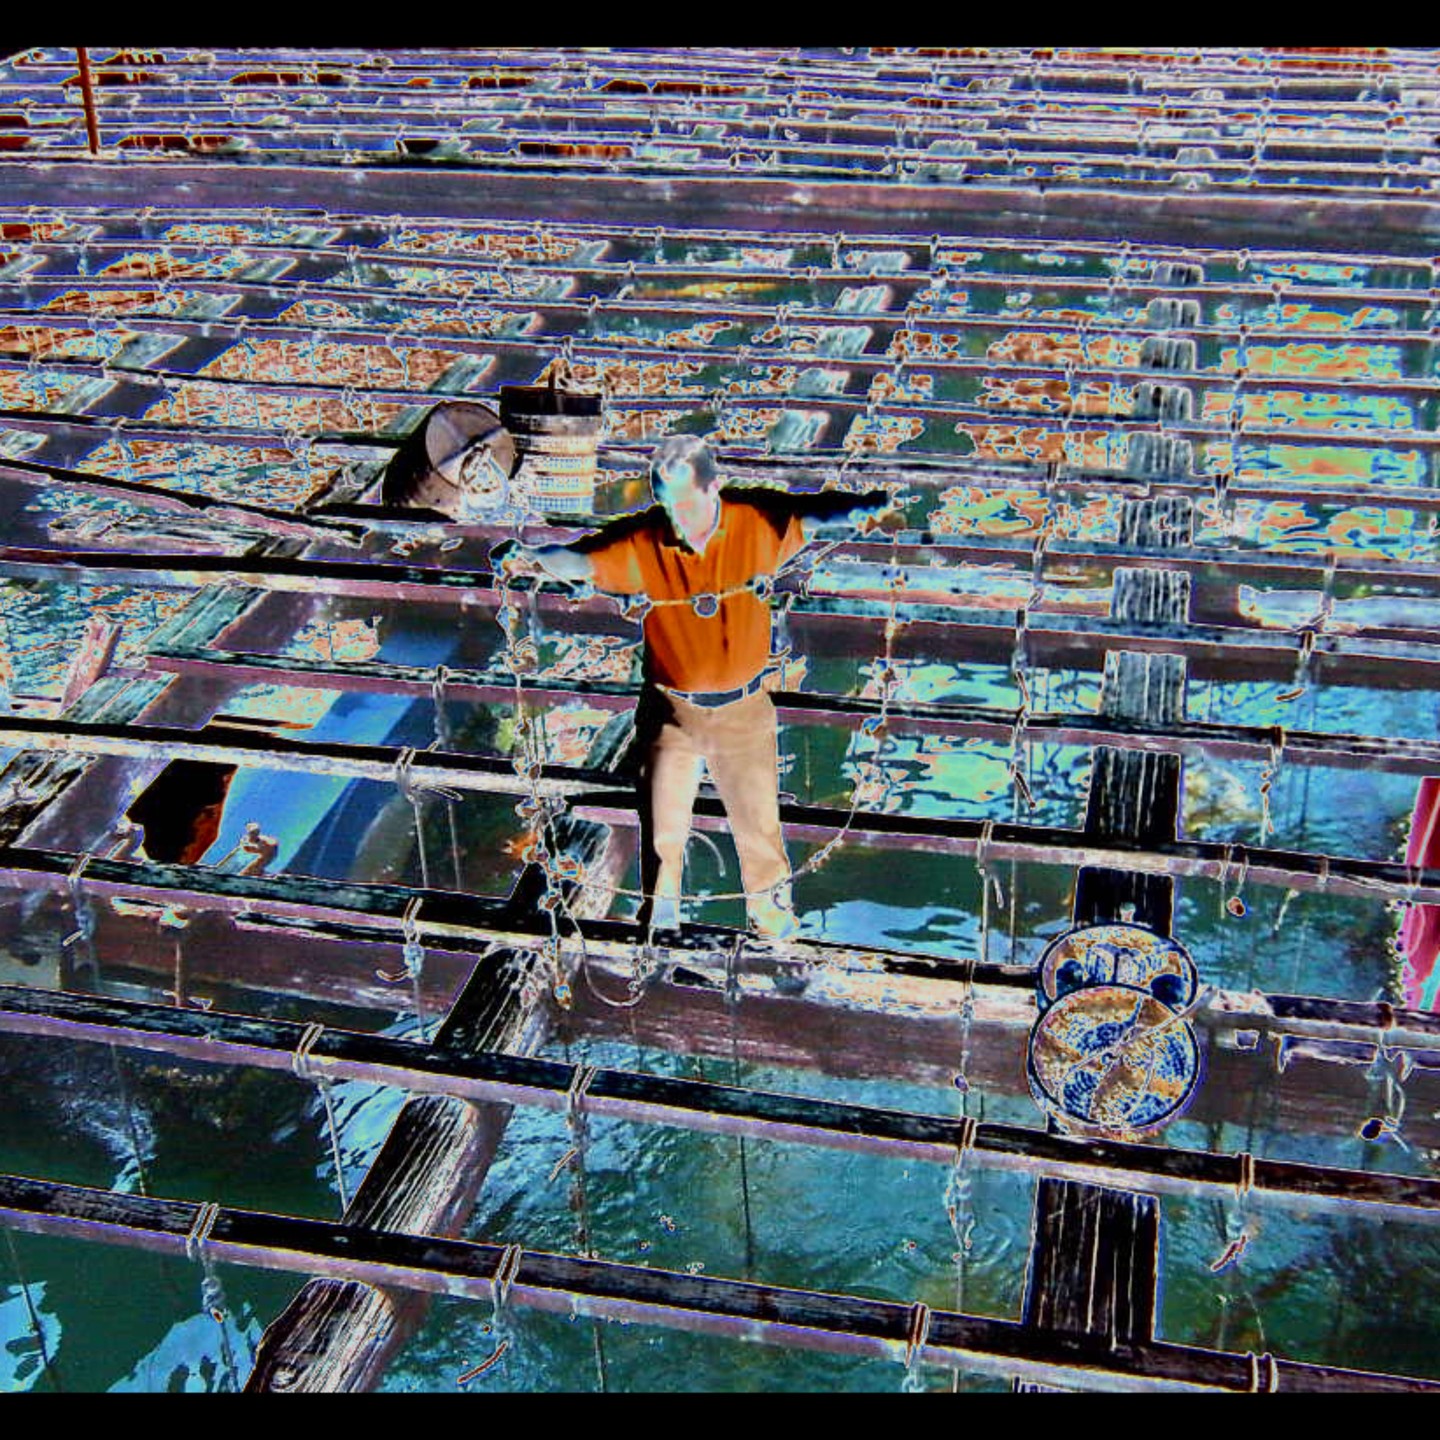 Ladislau da Regueira | Floating marine platform project # Surface grille (2008)